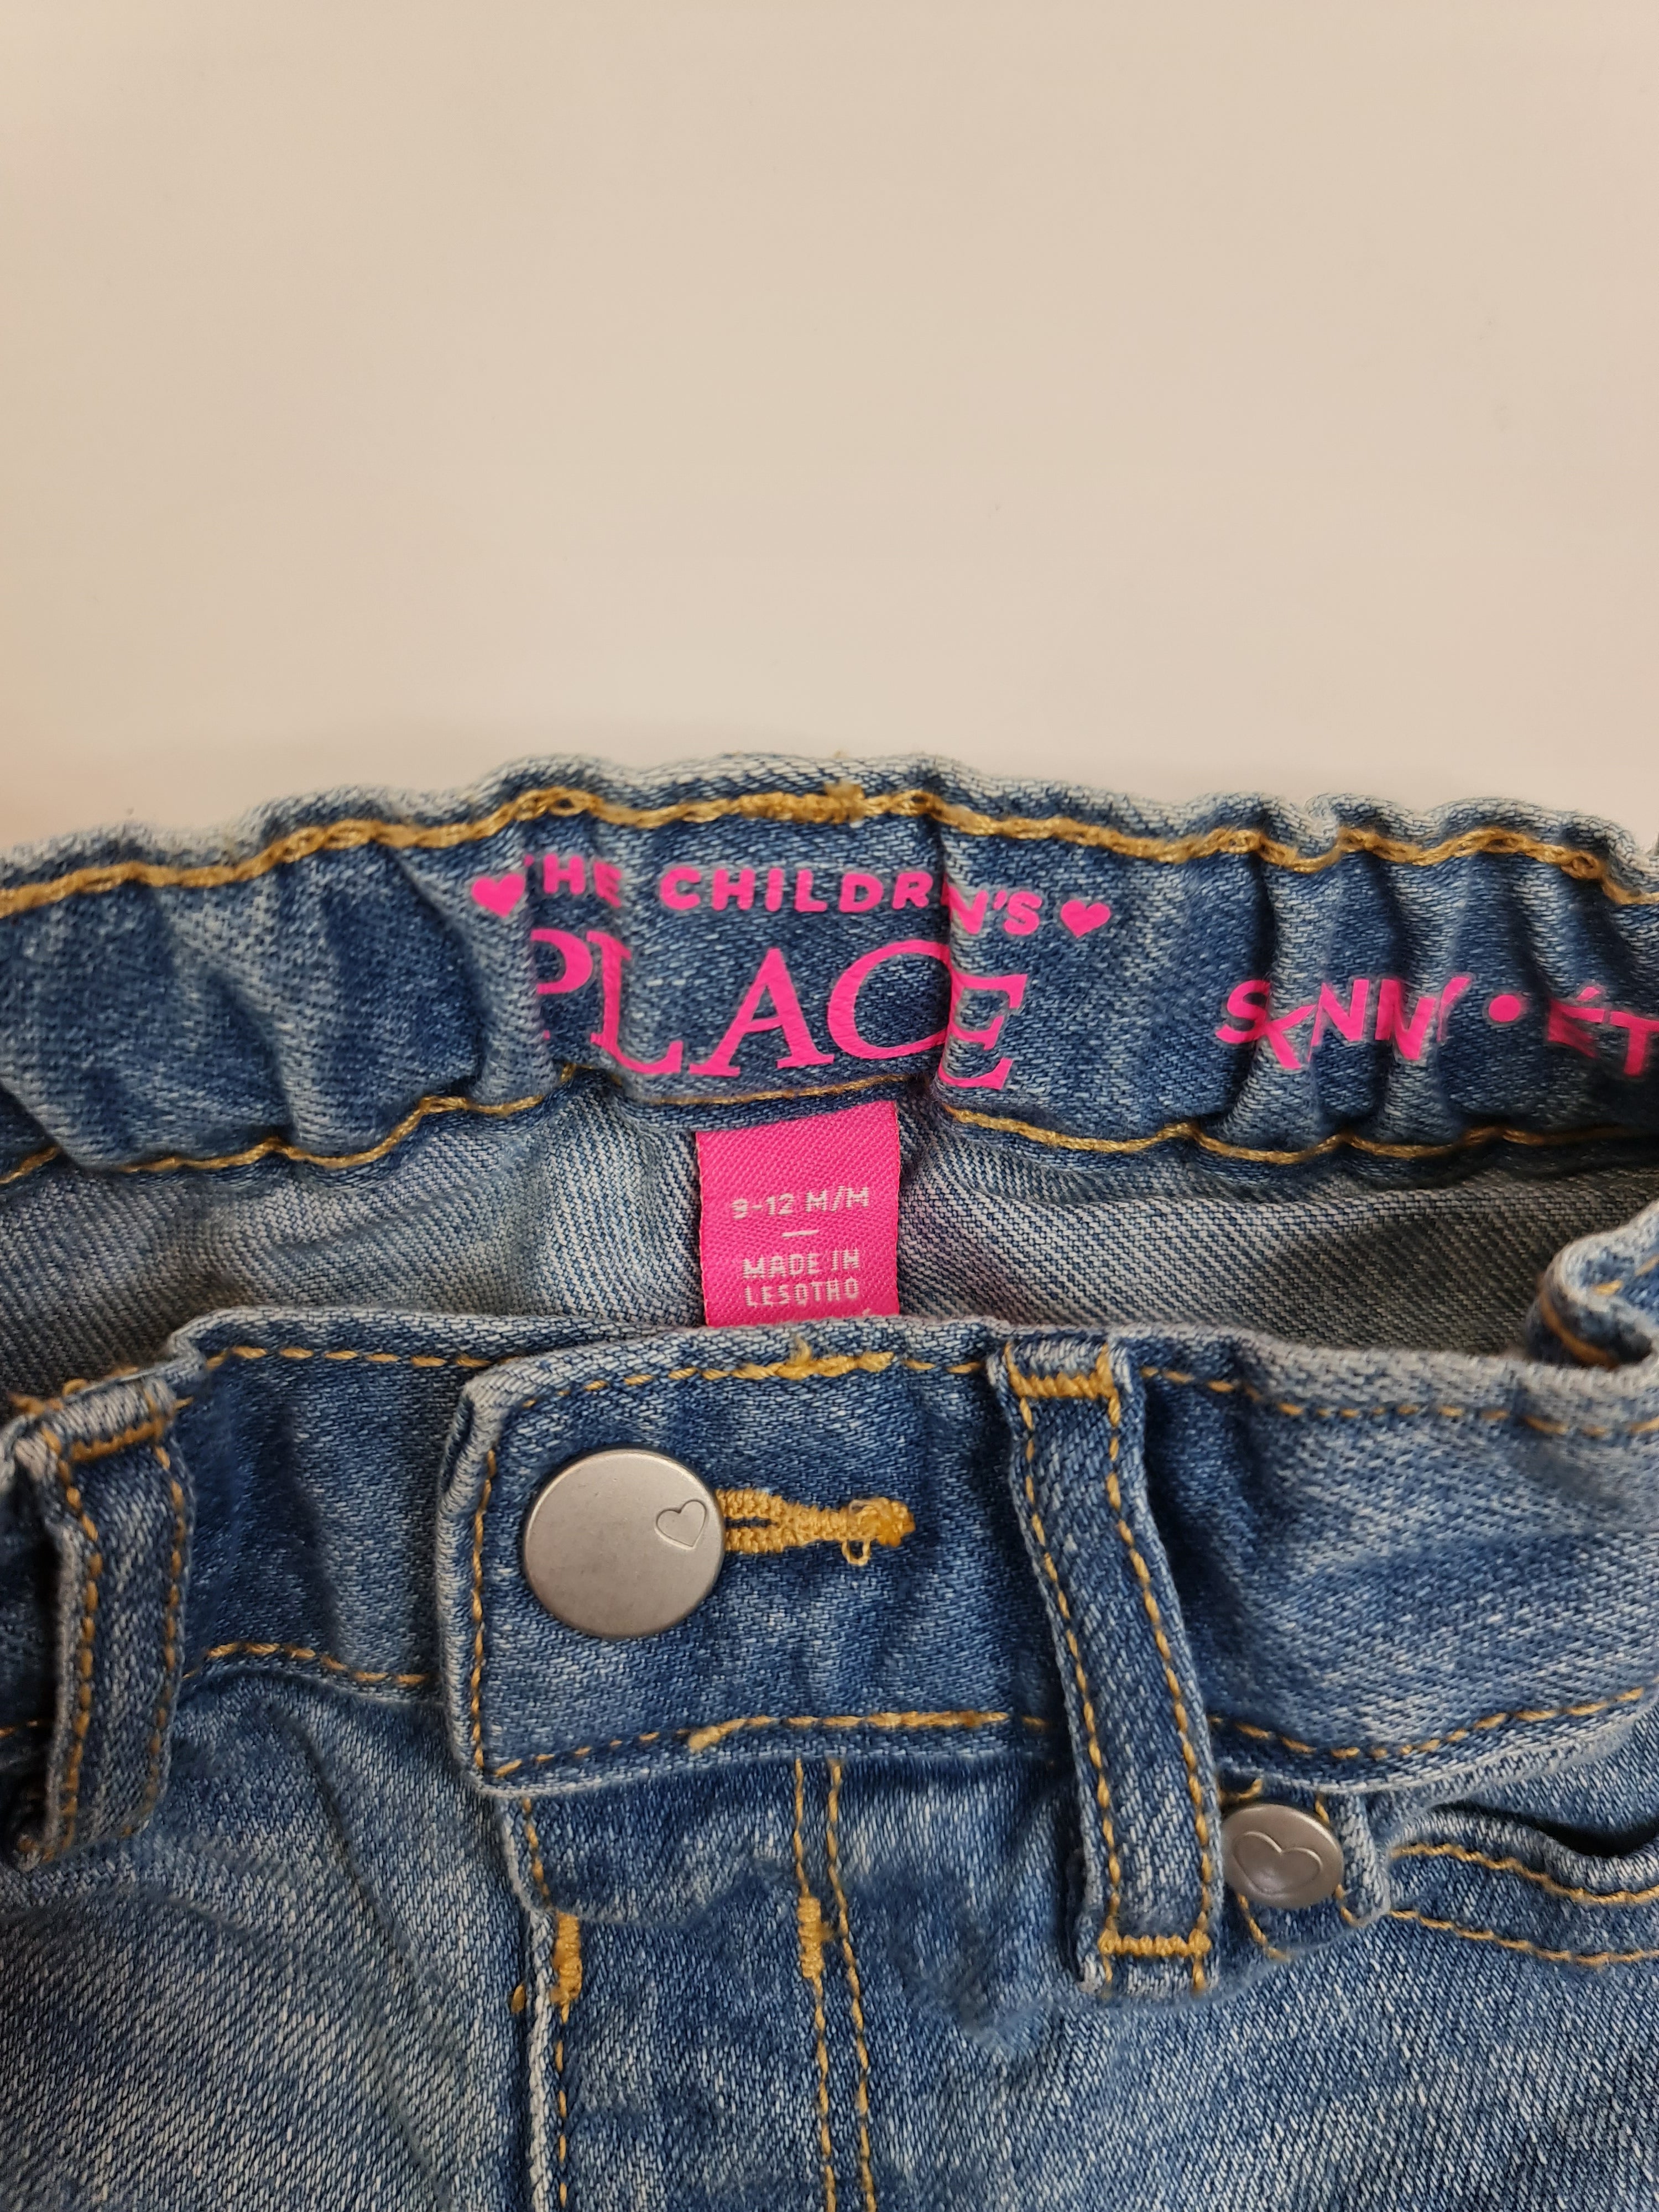 Pantalones de mezclilla marca The Children's Place para bebé de 9-12 meses